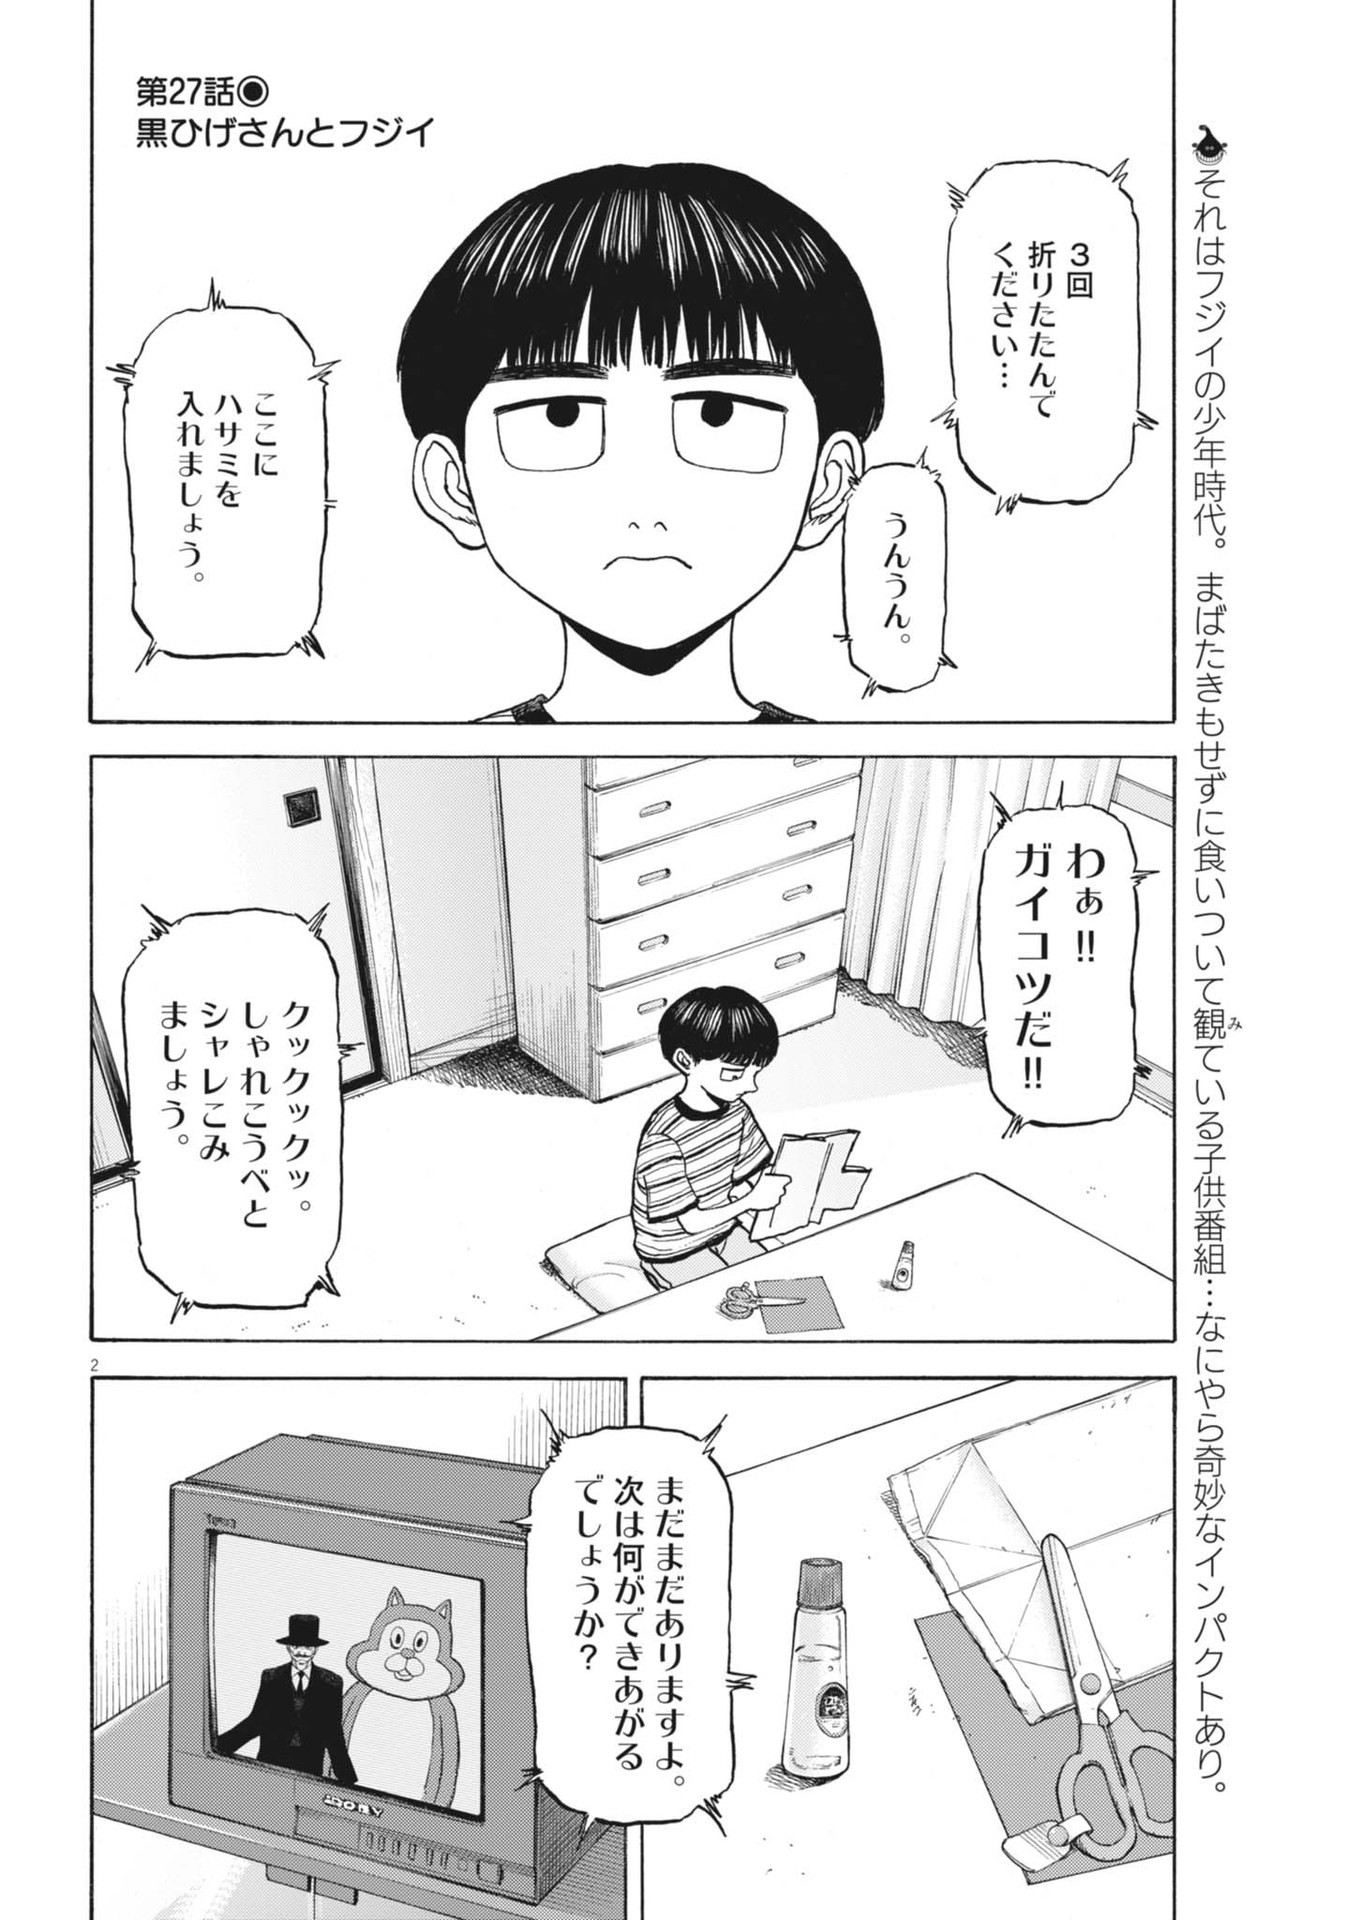 Robou no Fujii – Idai Naru Bonjin kara no Tayori - Chapter 27 - Page 2